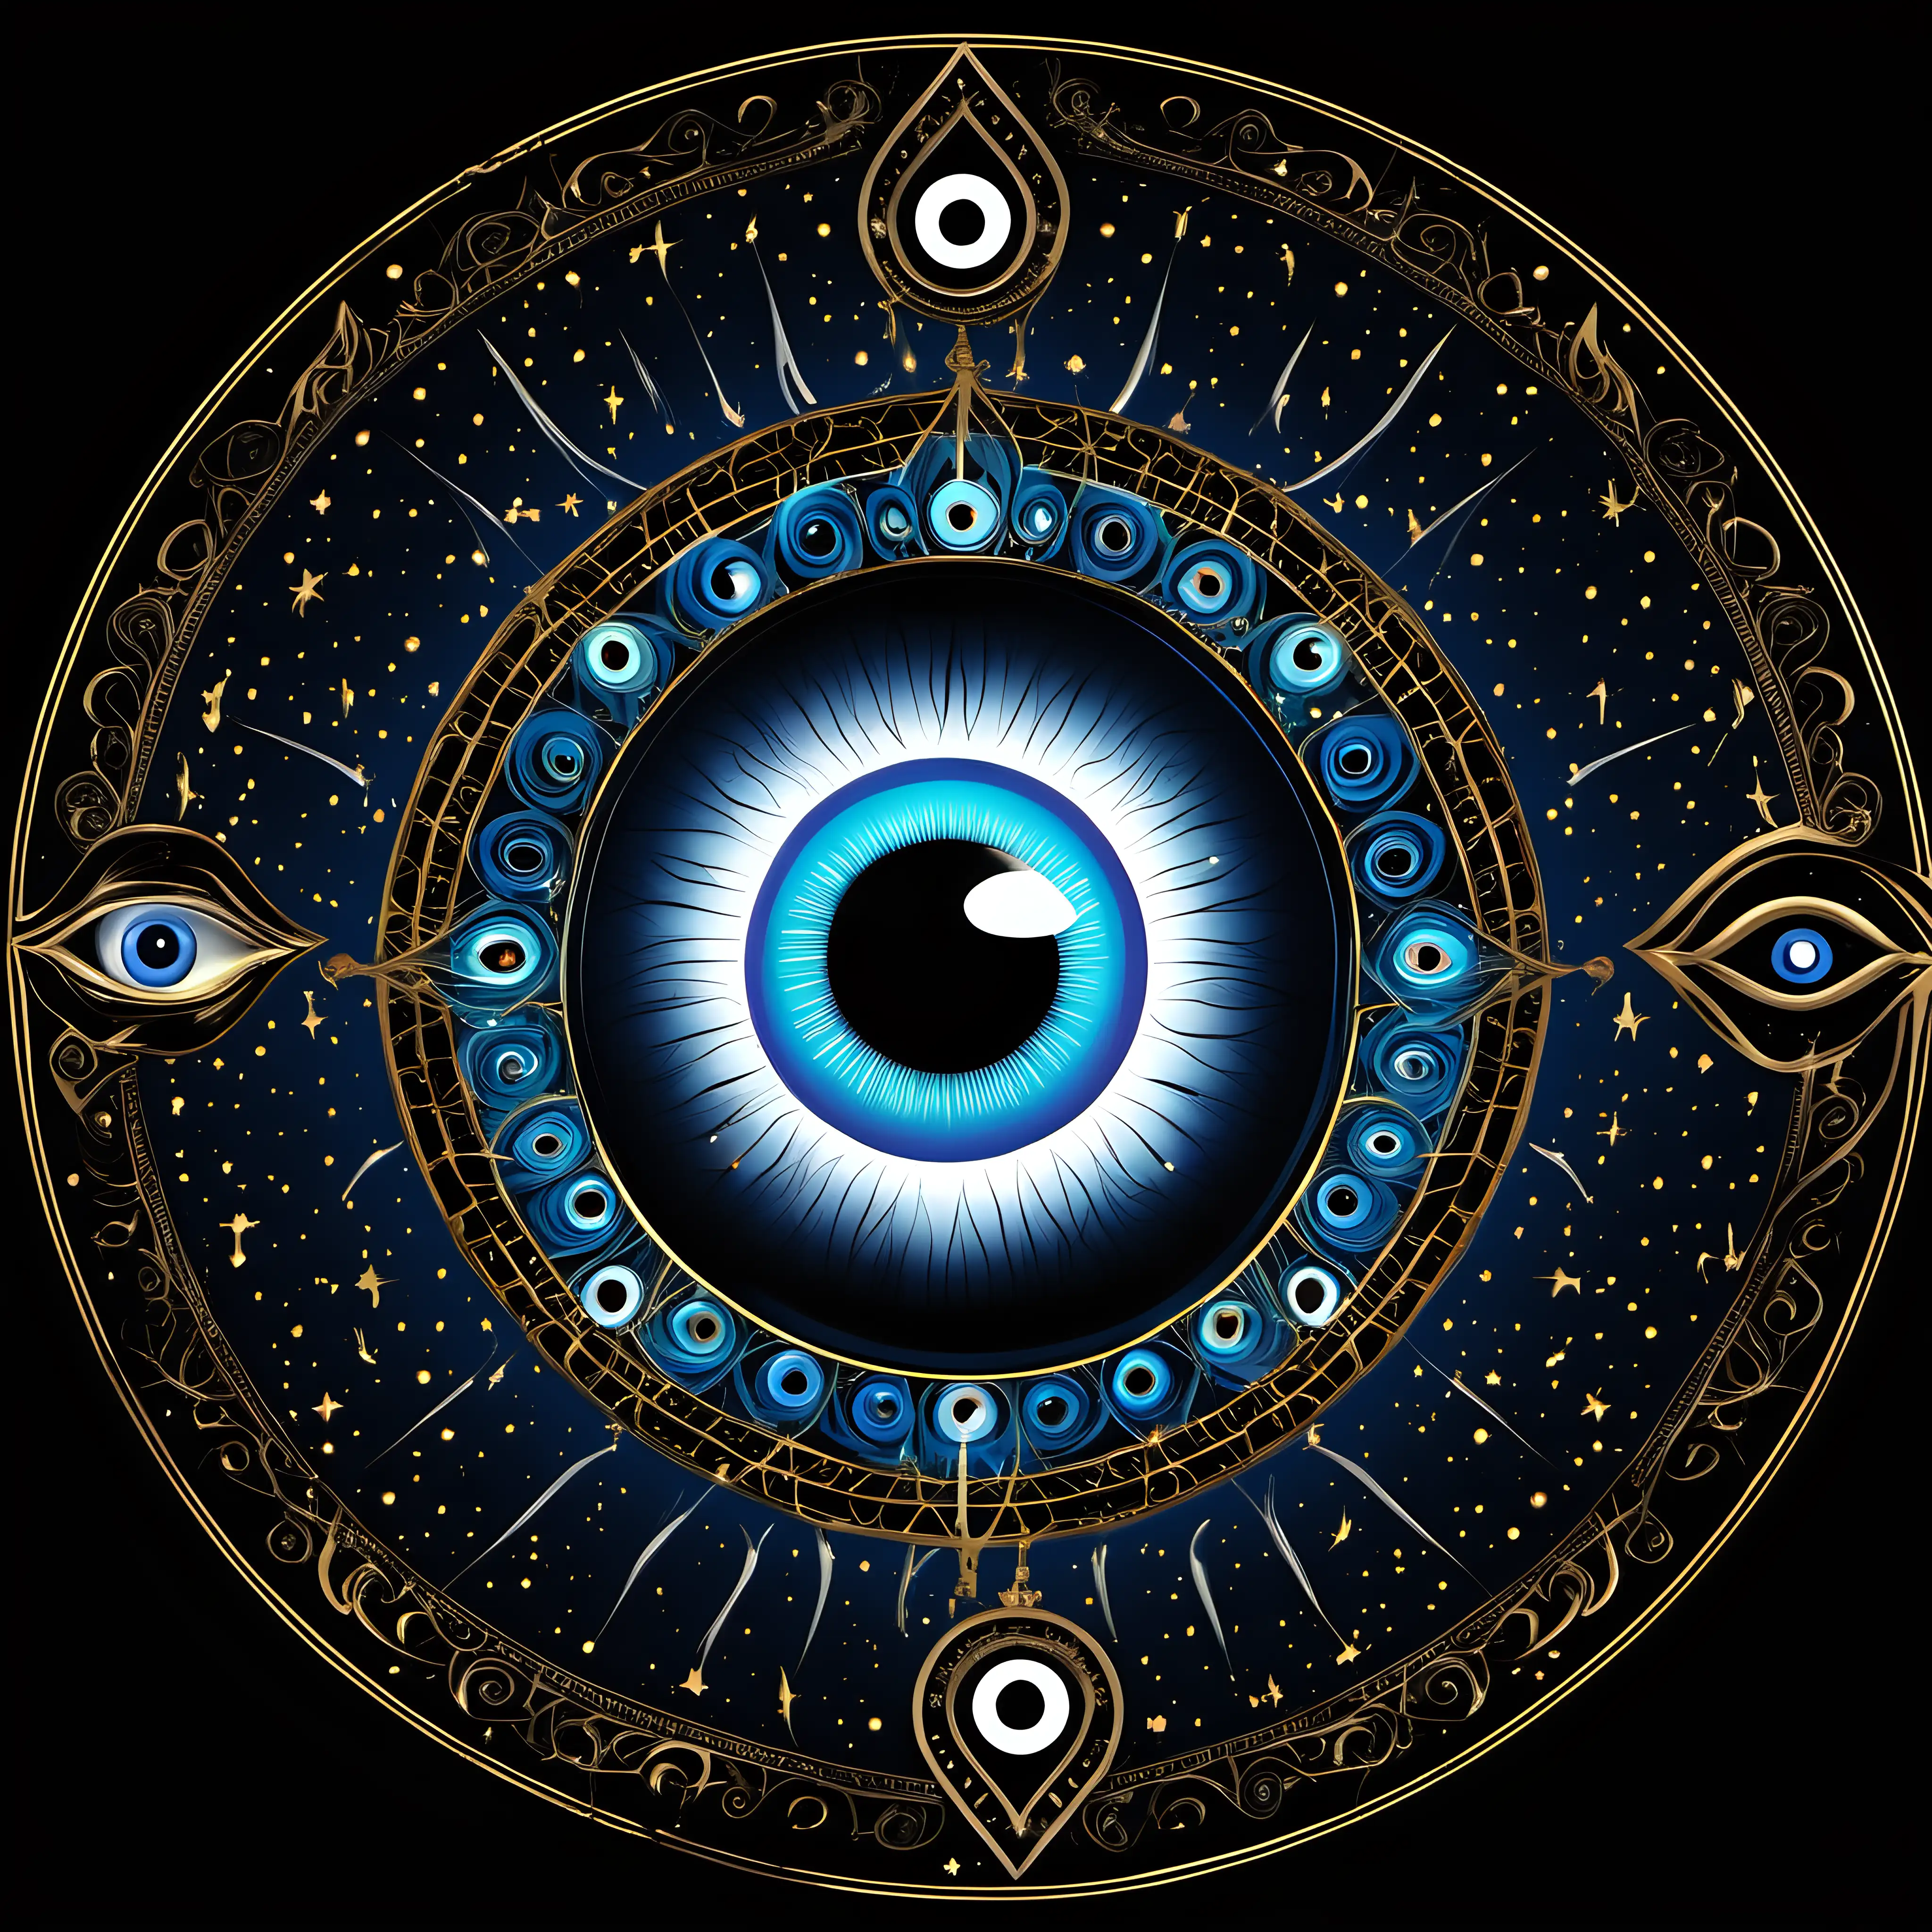 Celestial Evil Eye in Full Circle on Dark Background